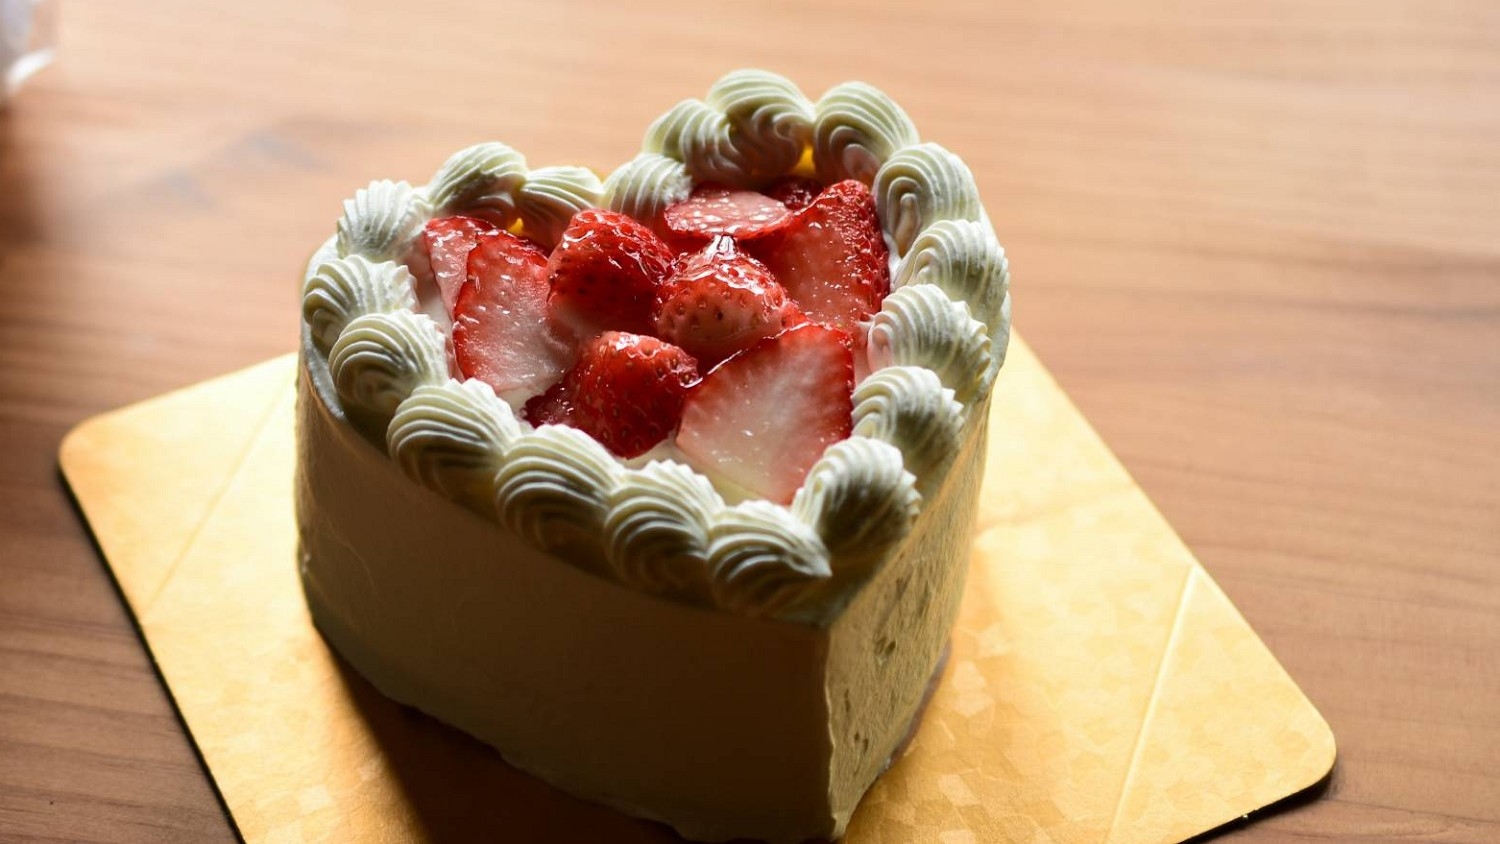 【アニバーサリープラン】上高地で記念日を。パティシエ手作りのスペシャルケーキ付